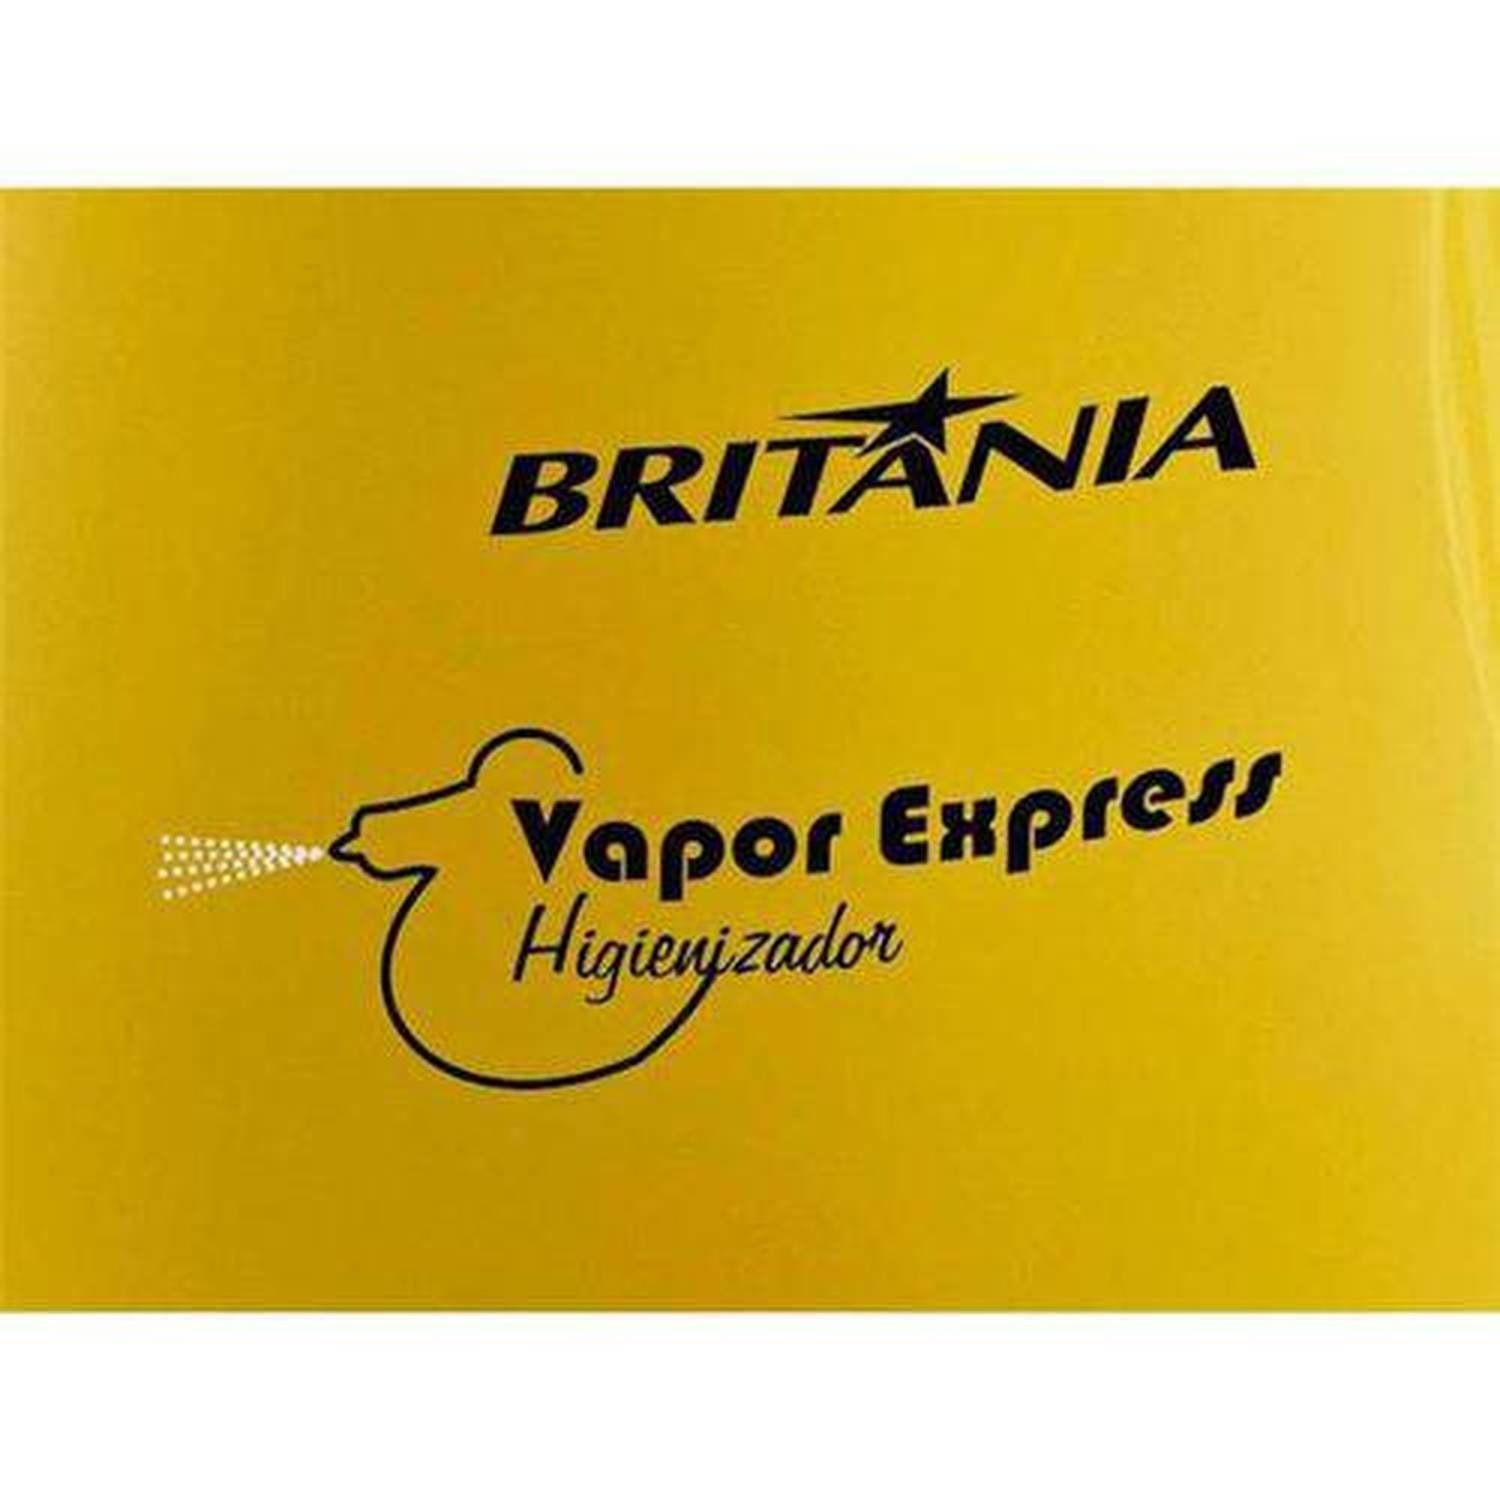 Vaporizador / Higienizador Britânia Vapor Express - 110V - 3